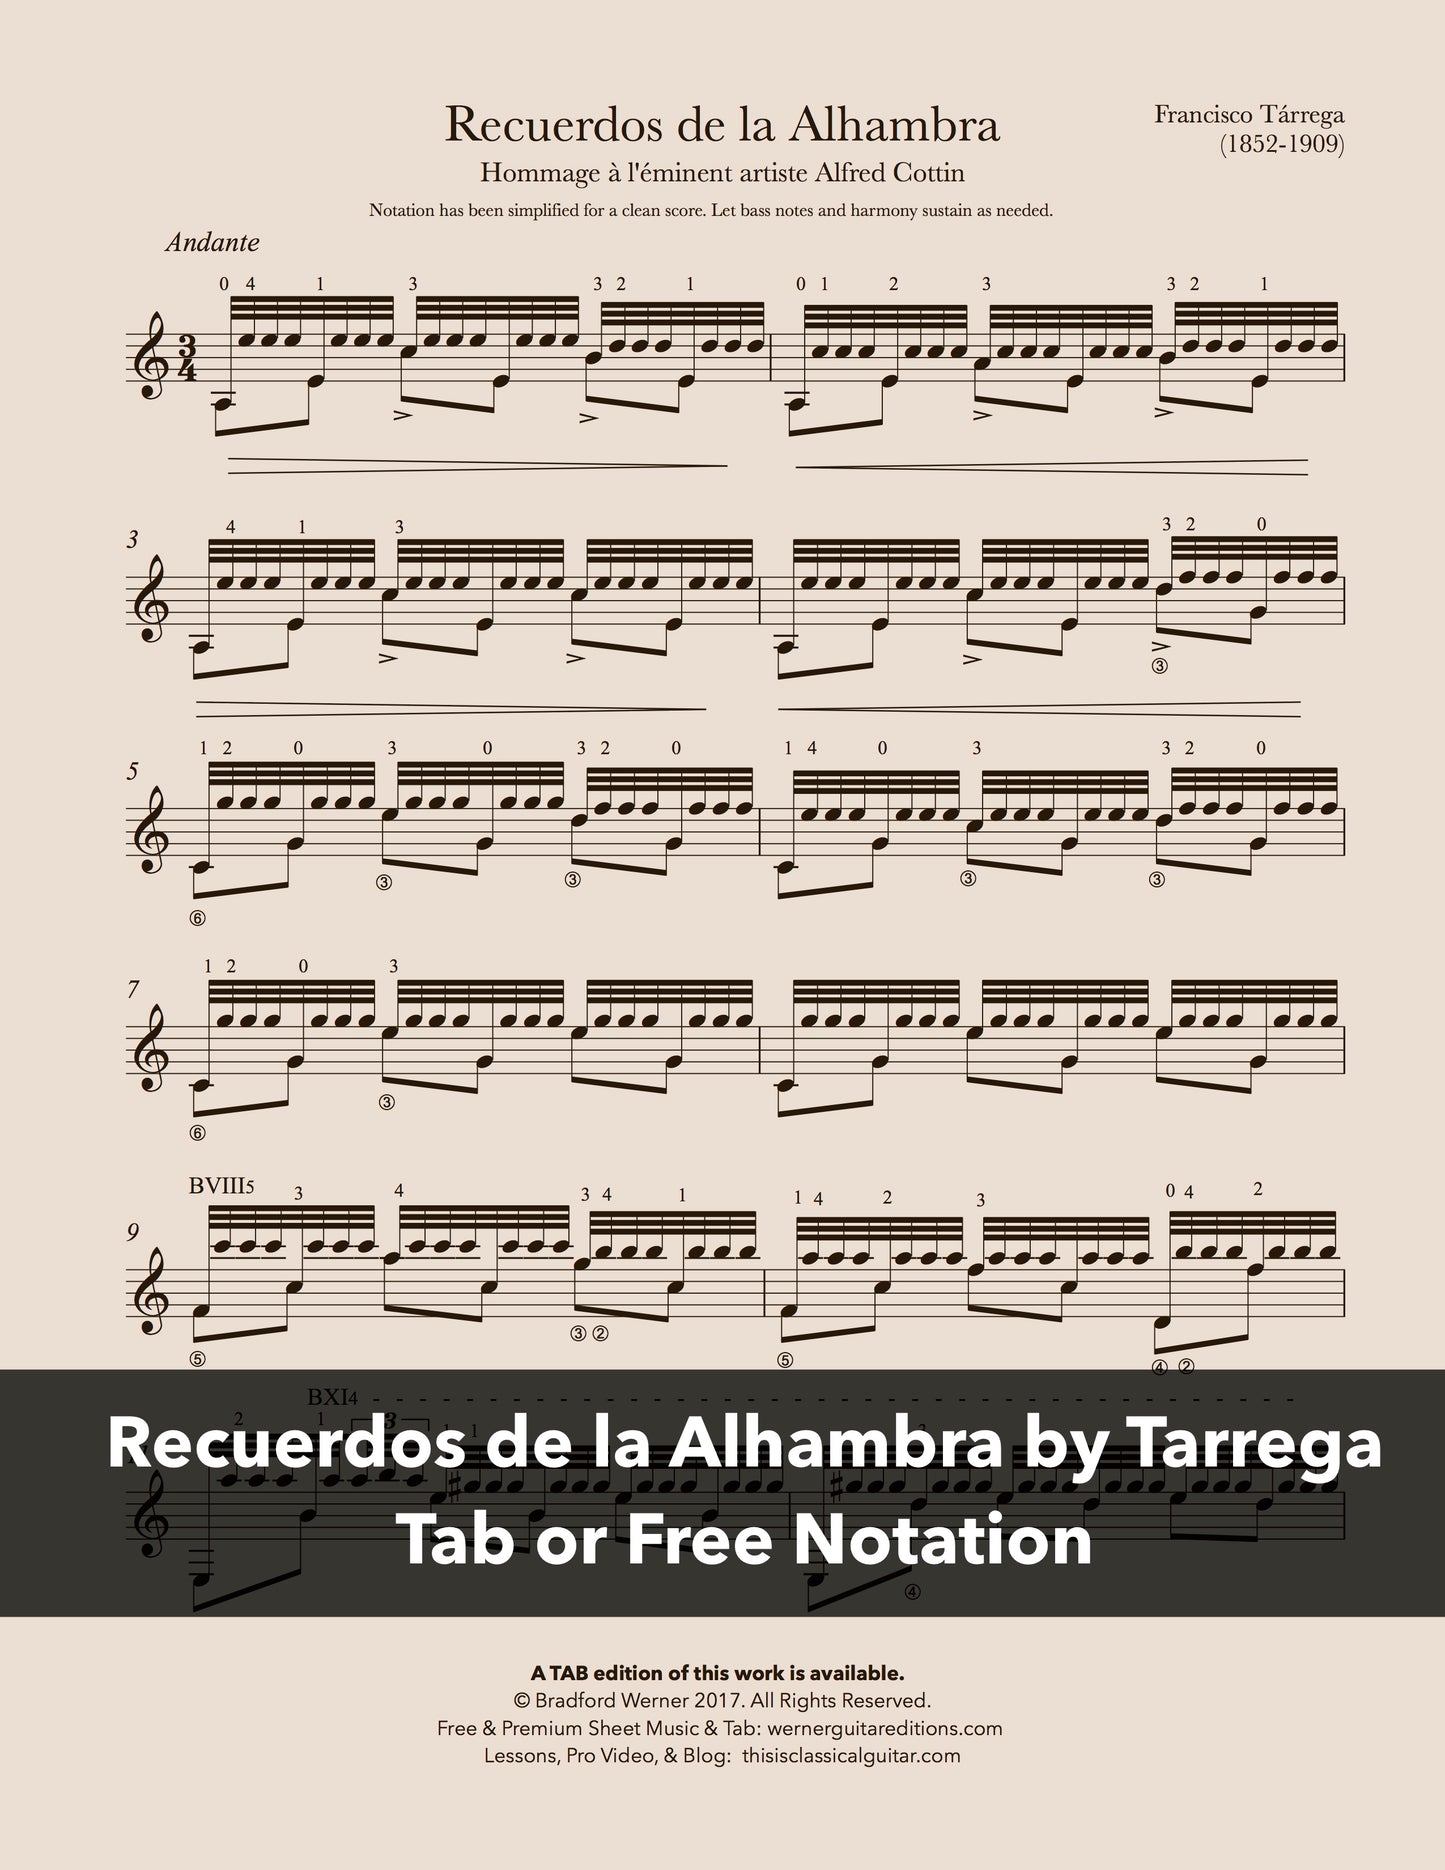 Recuerdos de la Alhambra by Tarrega (Free PDF)